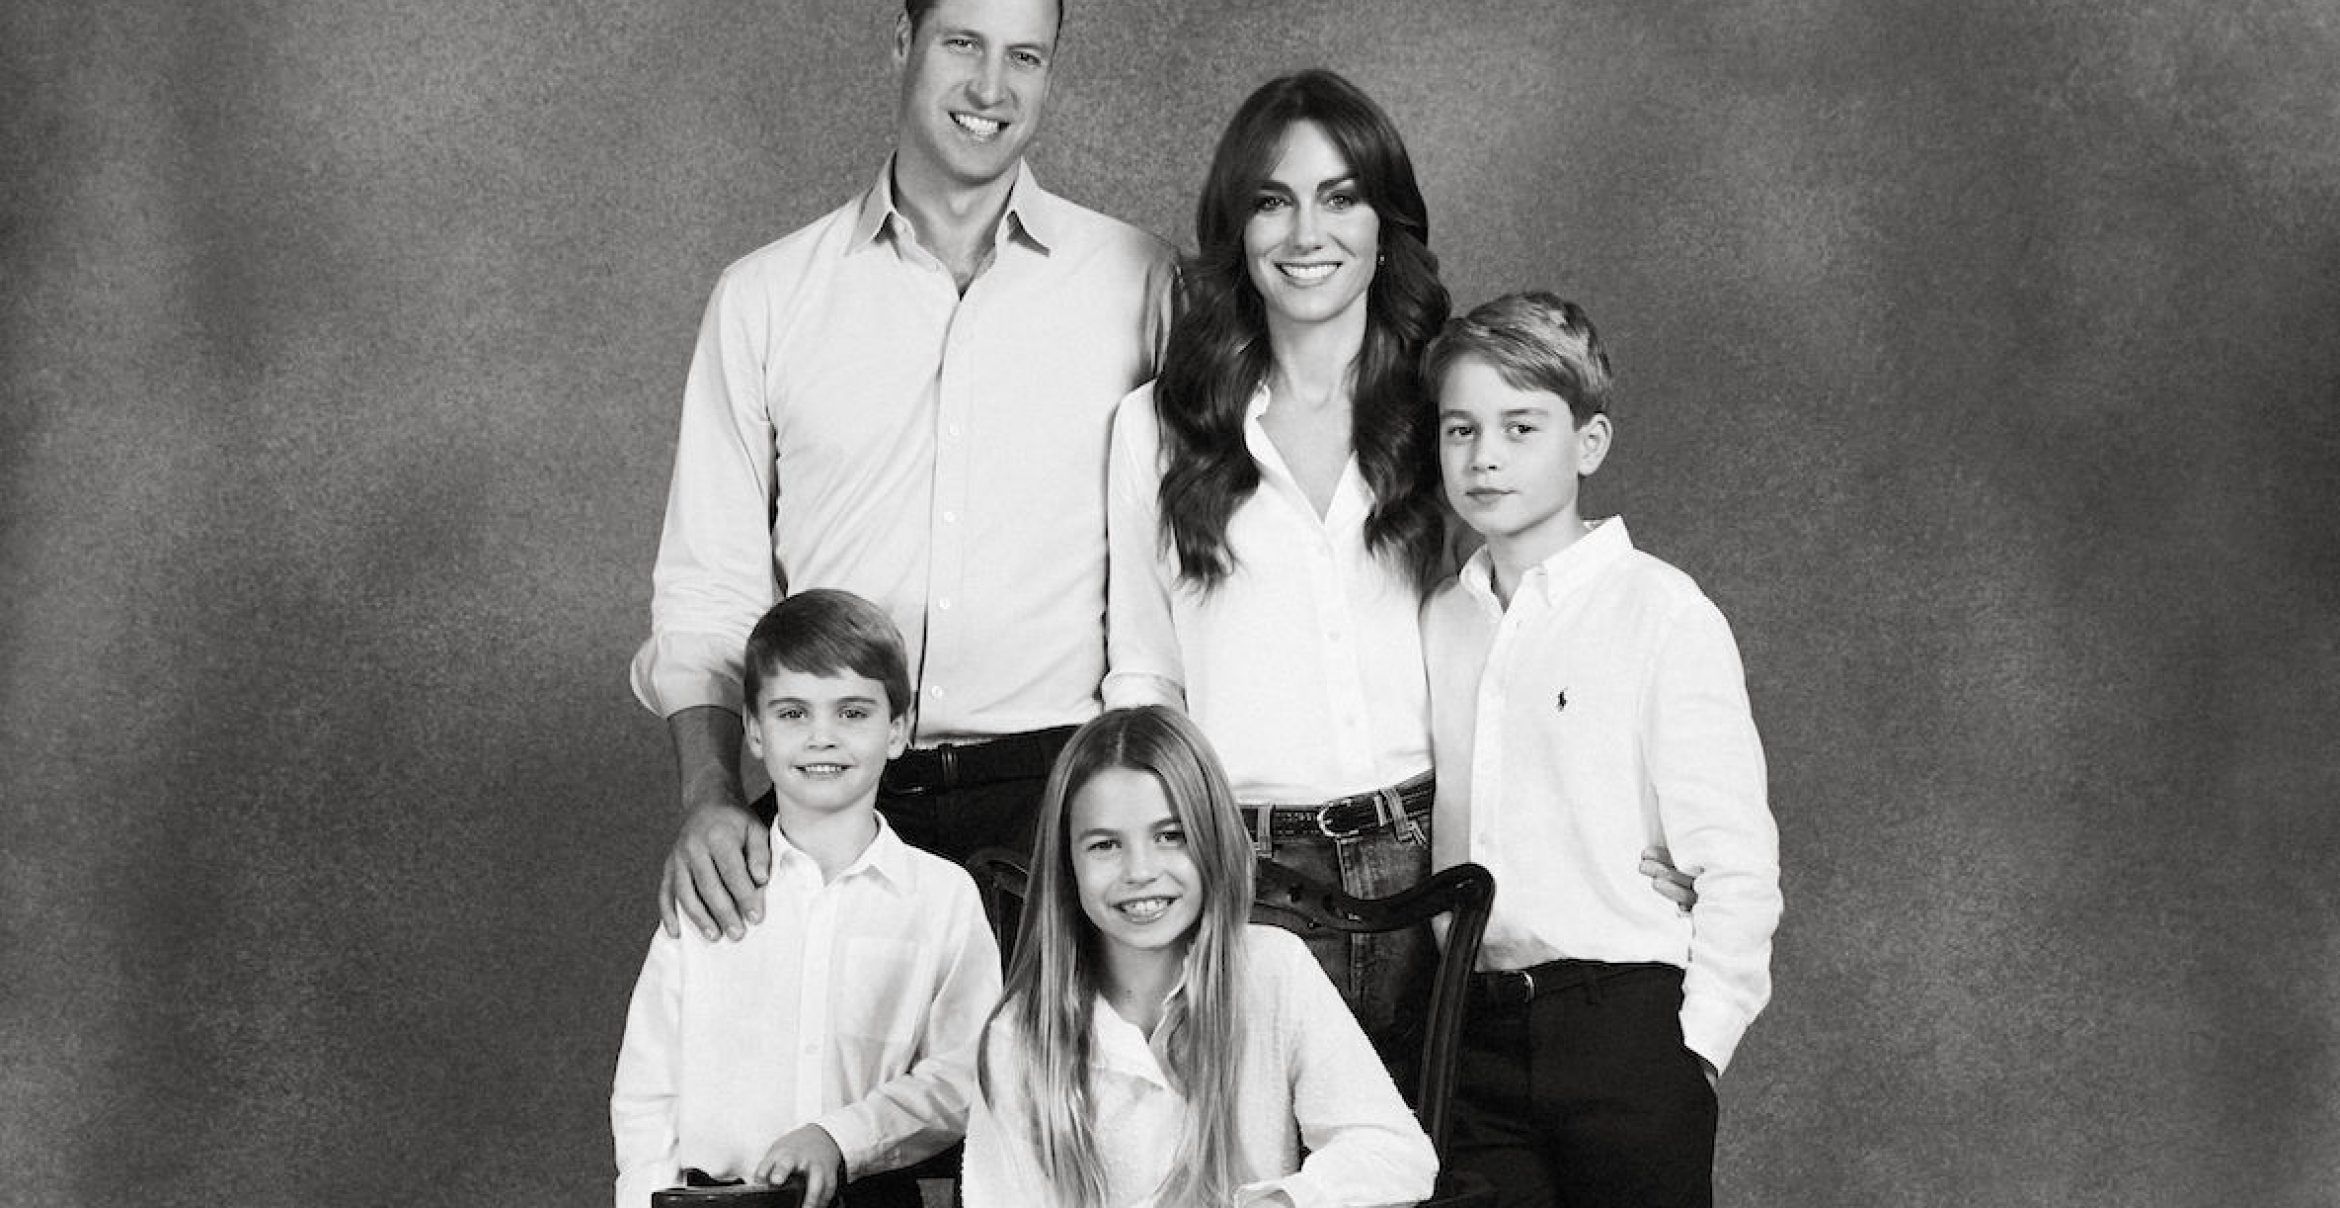 Photoshop-Panne bei den Royals?